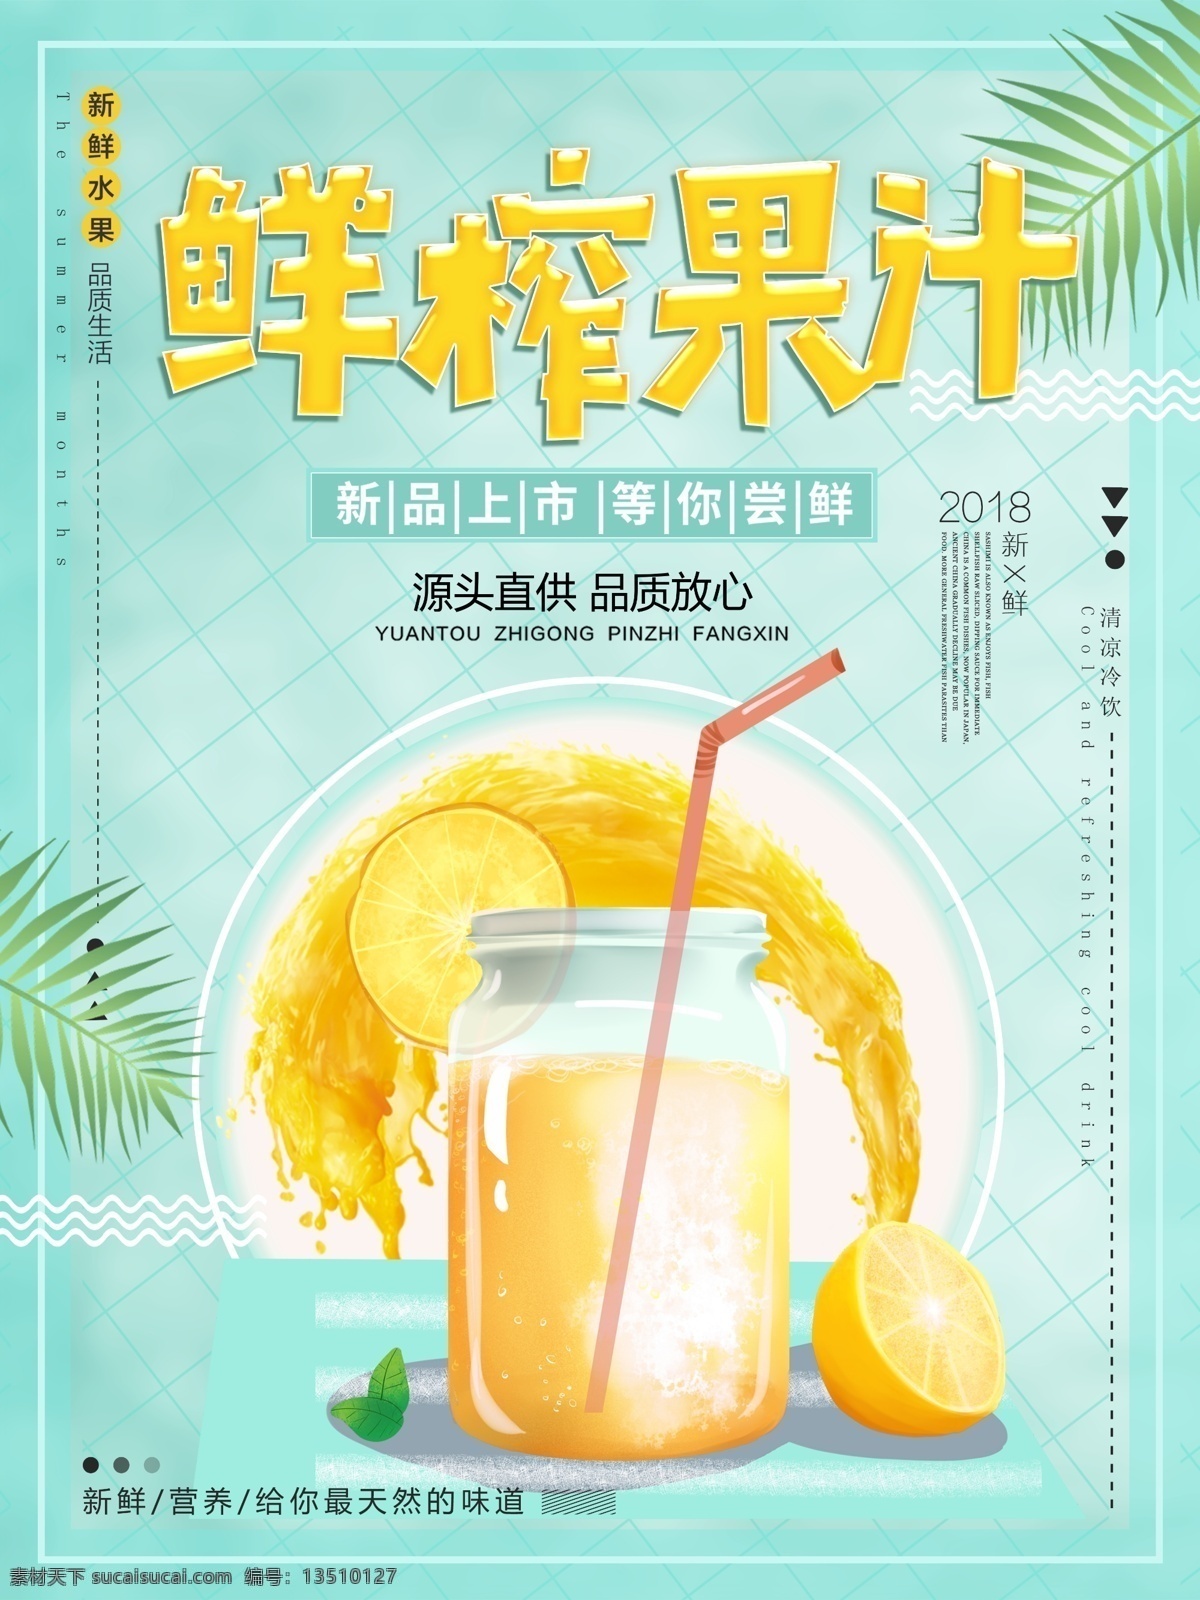 绿色 清新 夏季 夏日 冷饮 鲜榨 果汁 促销 海报 叶子 夏天 鲜榨果汁 柠檬汁 饮料